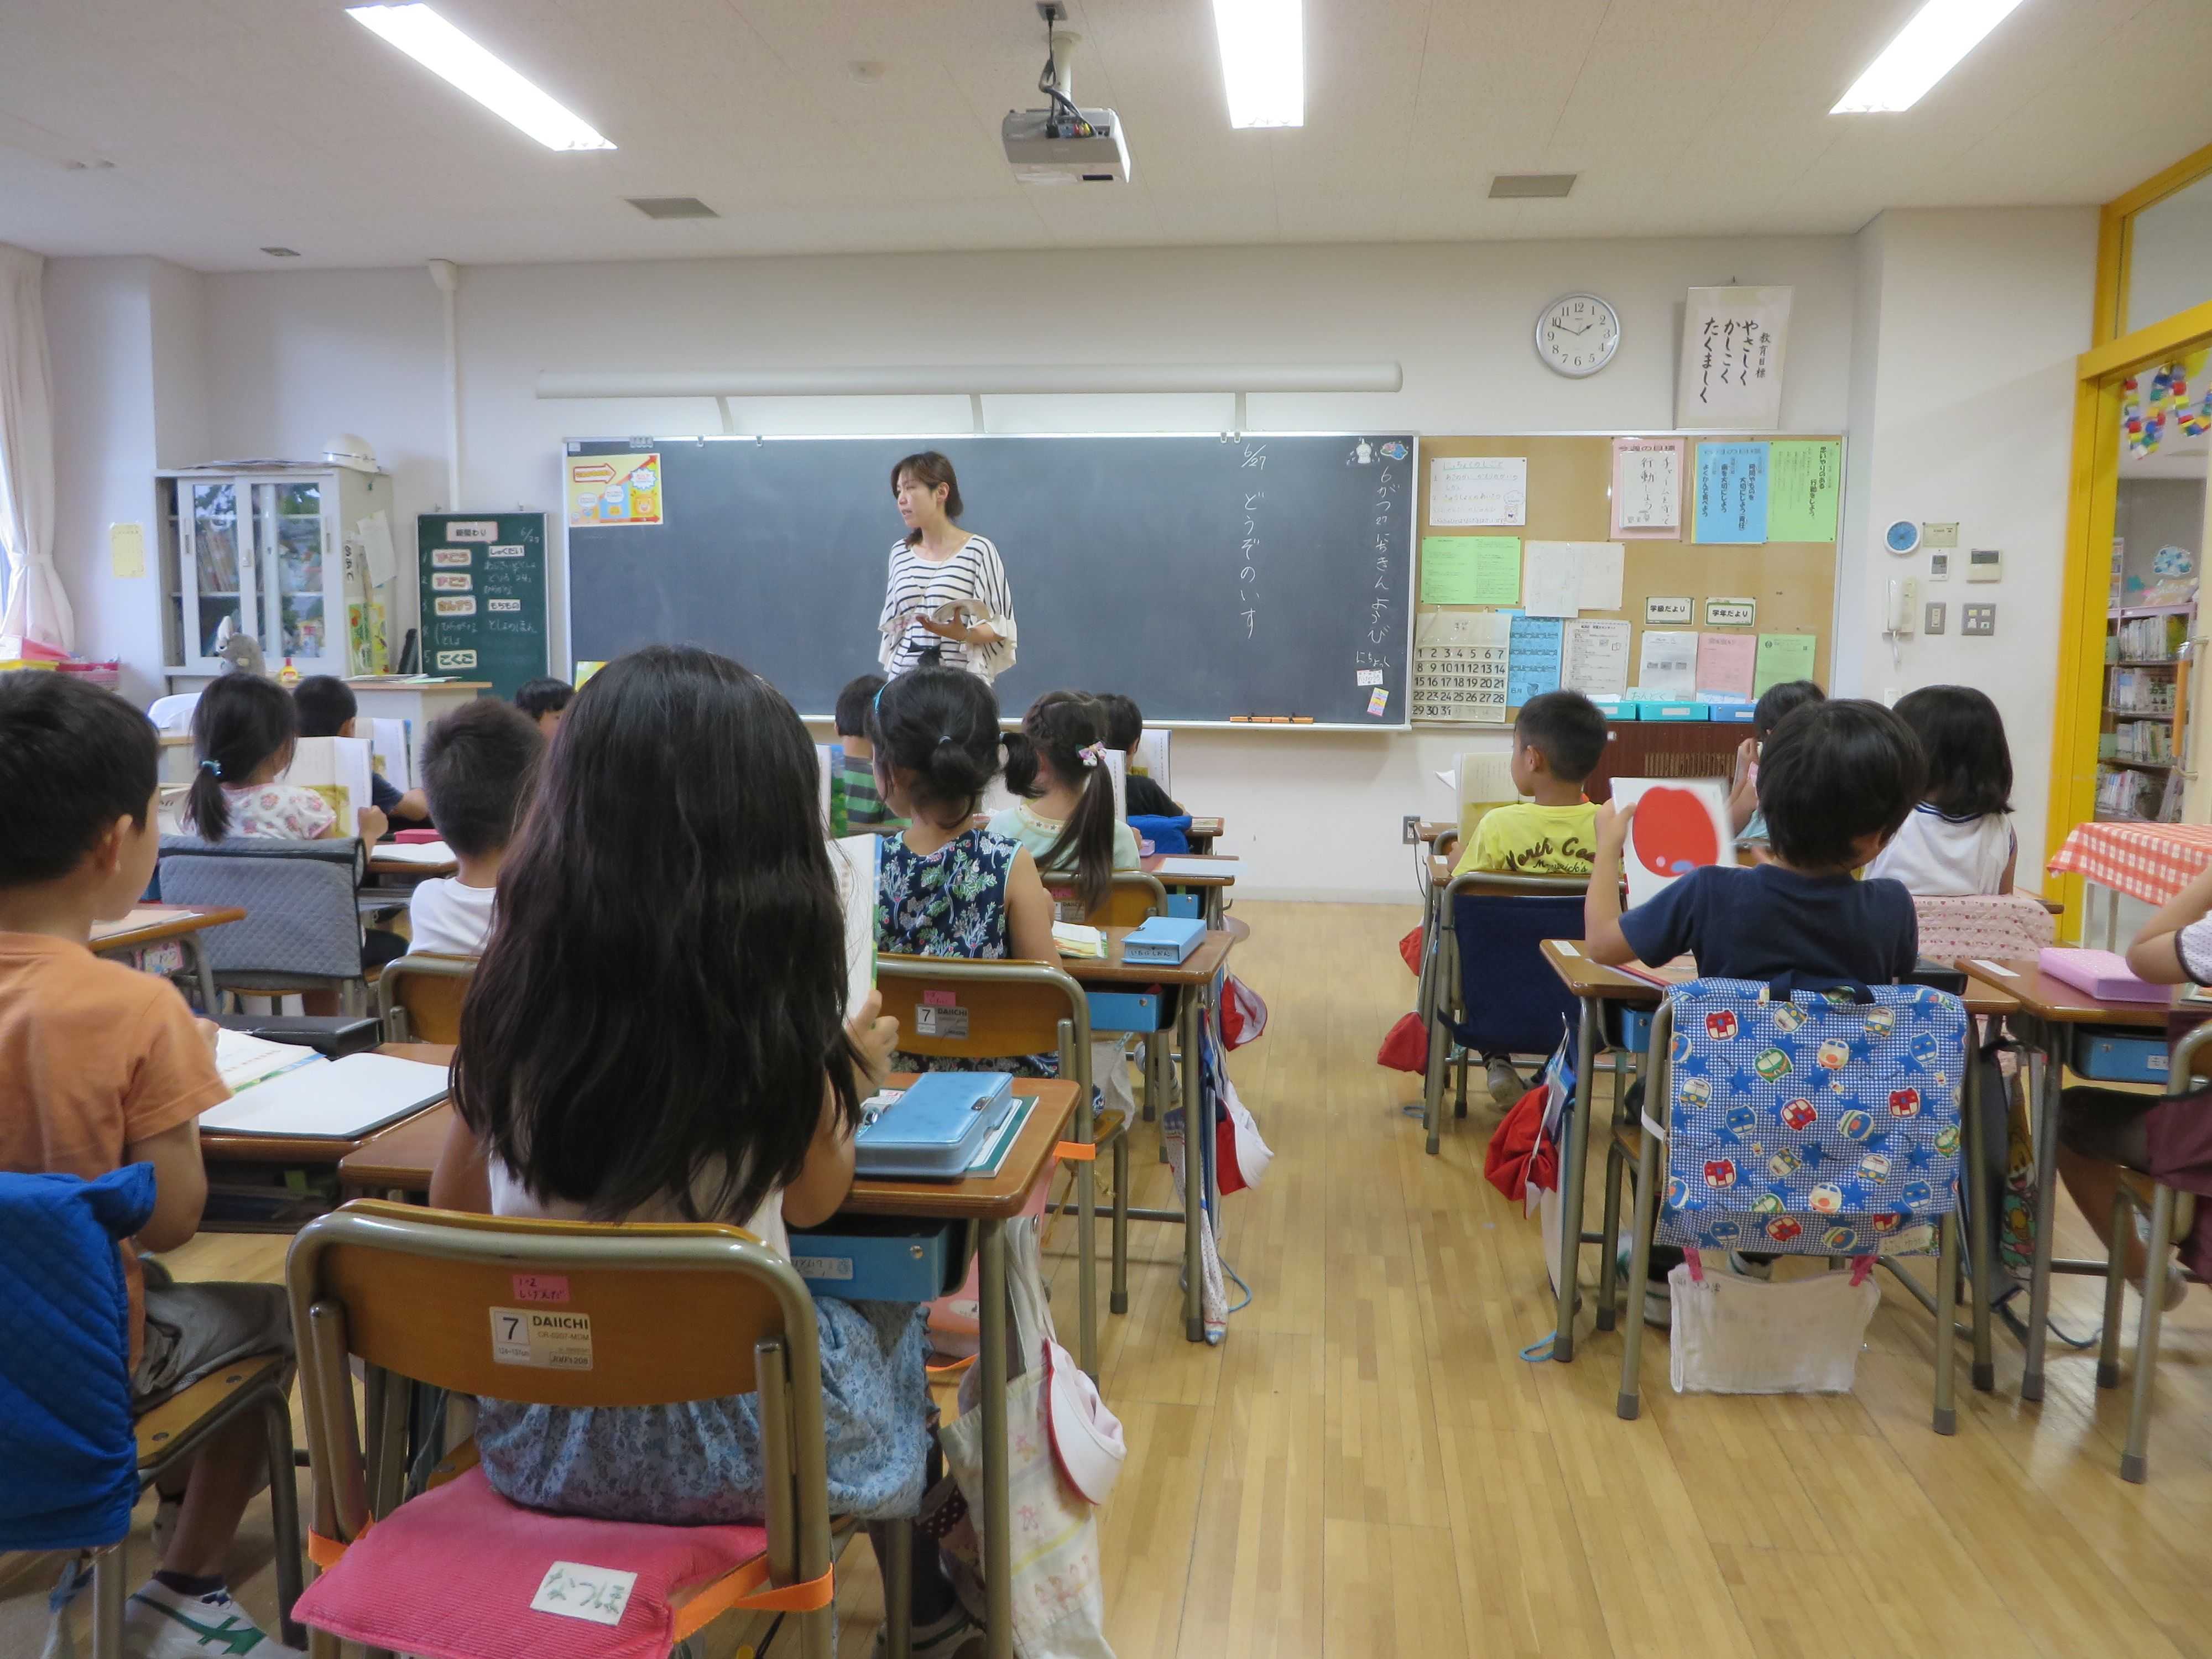 تصاویری از کلاس مدارس ابتدایی در ژاپن